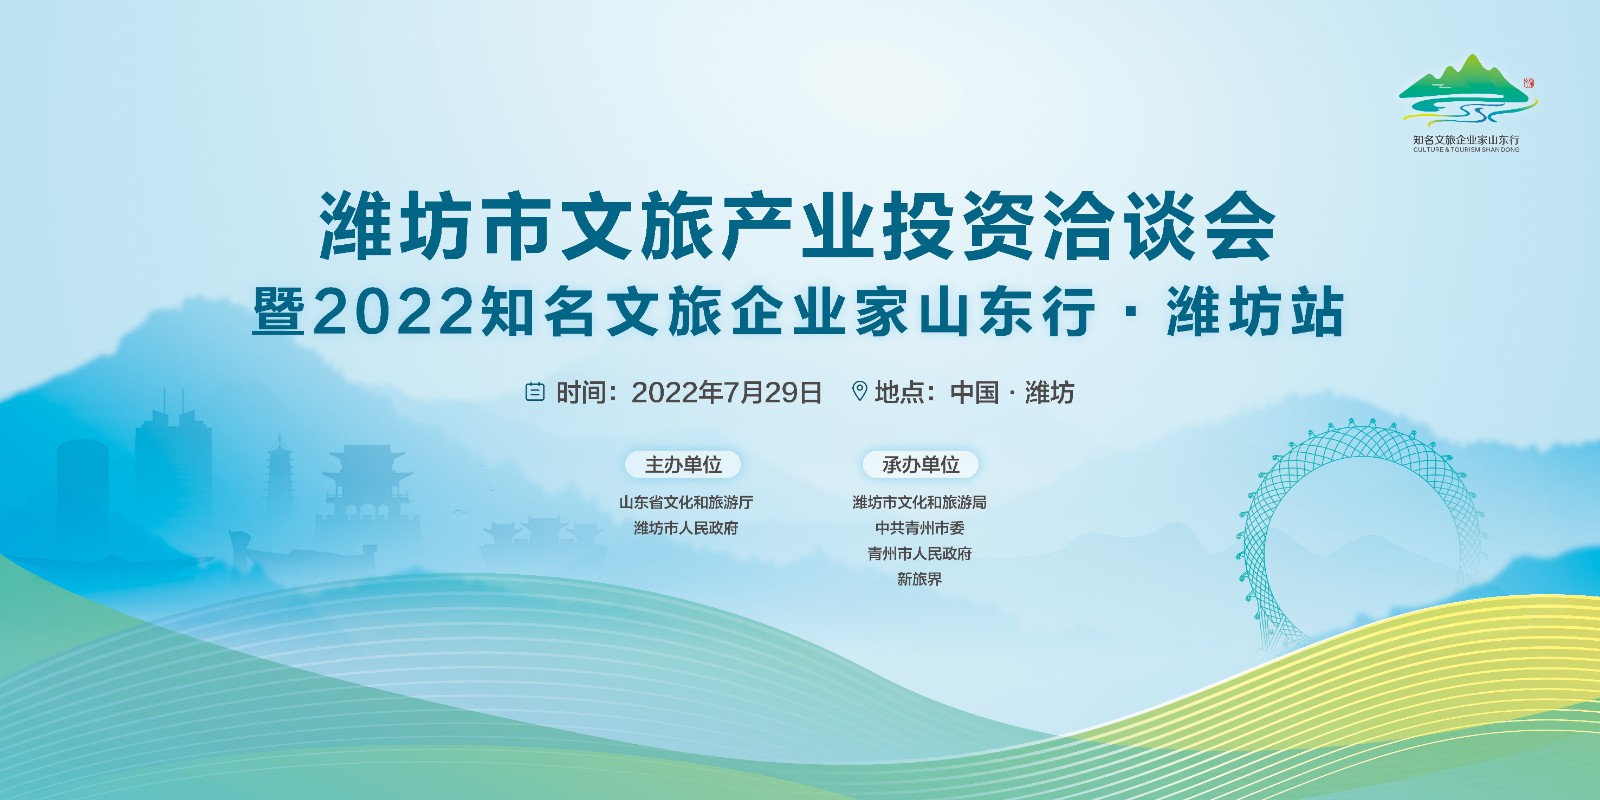 “2022年知名文旅企业家山东行”即将启动 首站落地潍坊